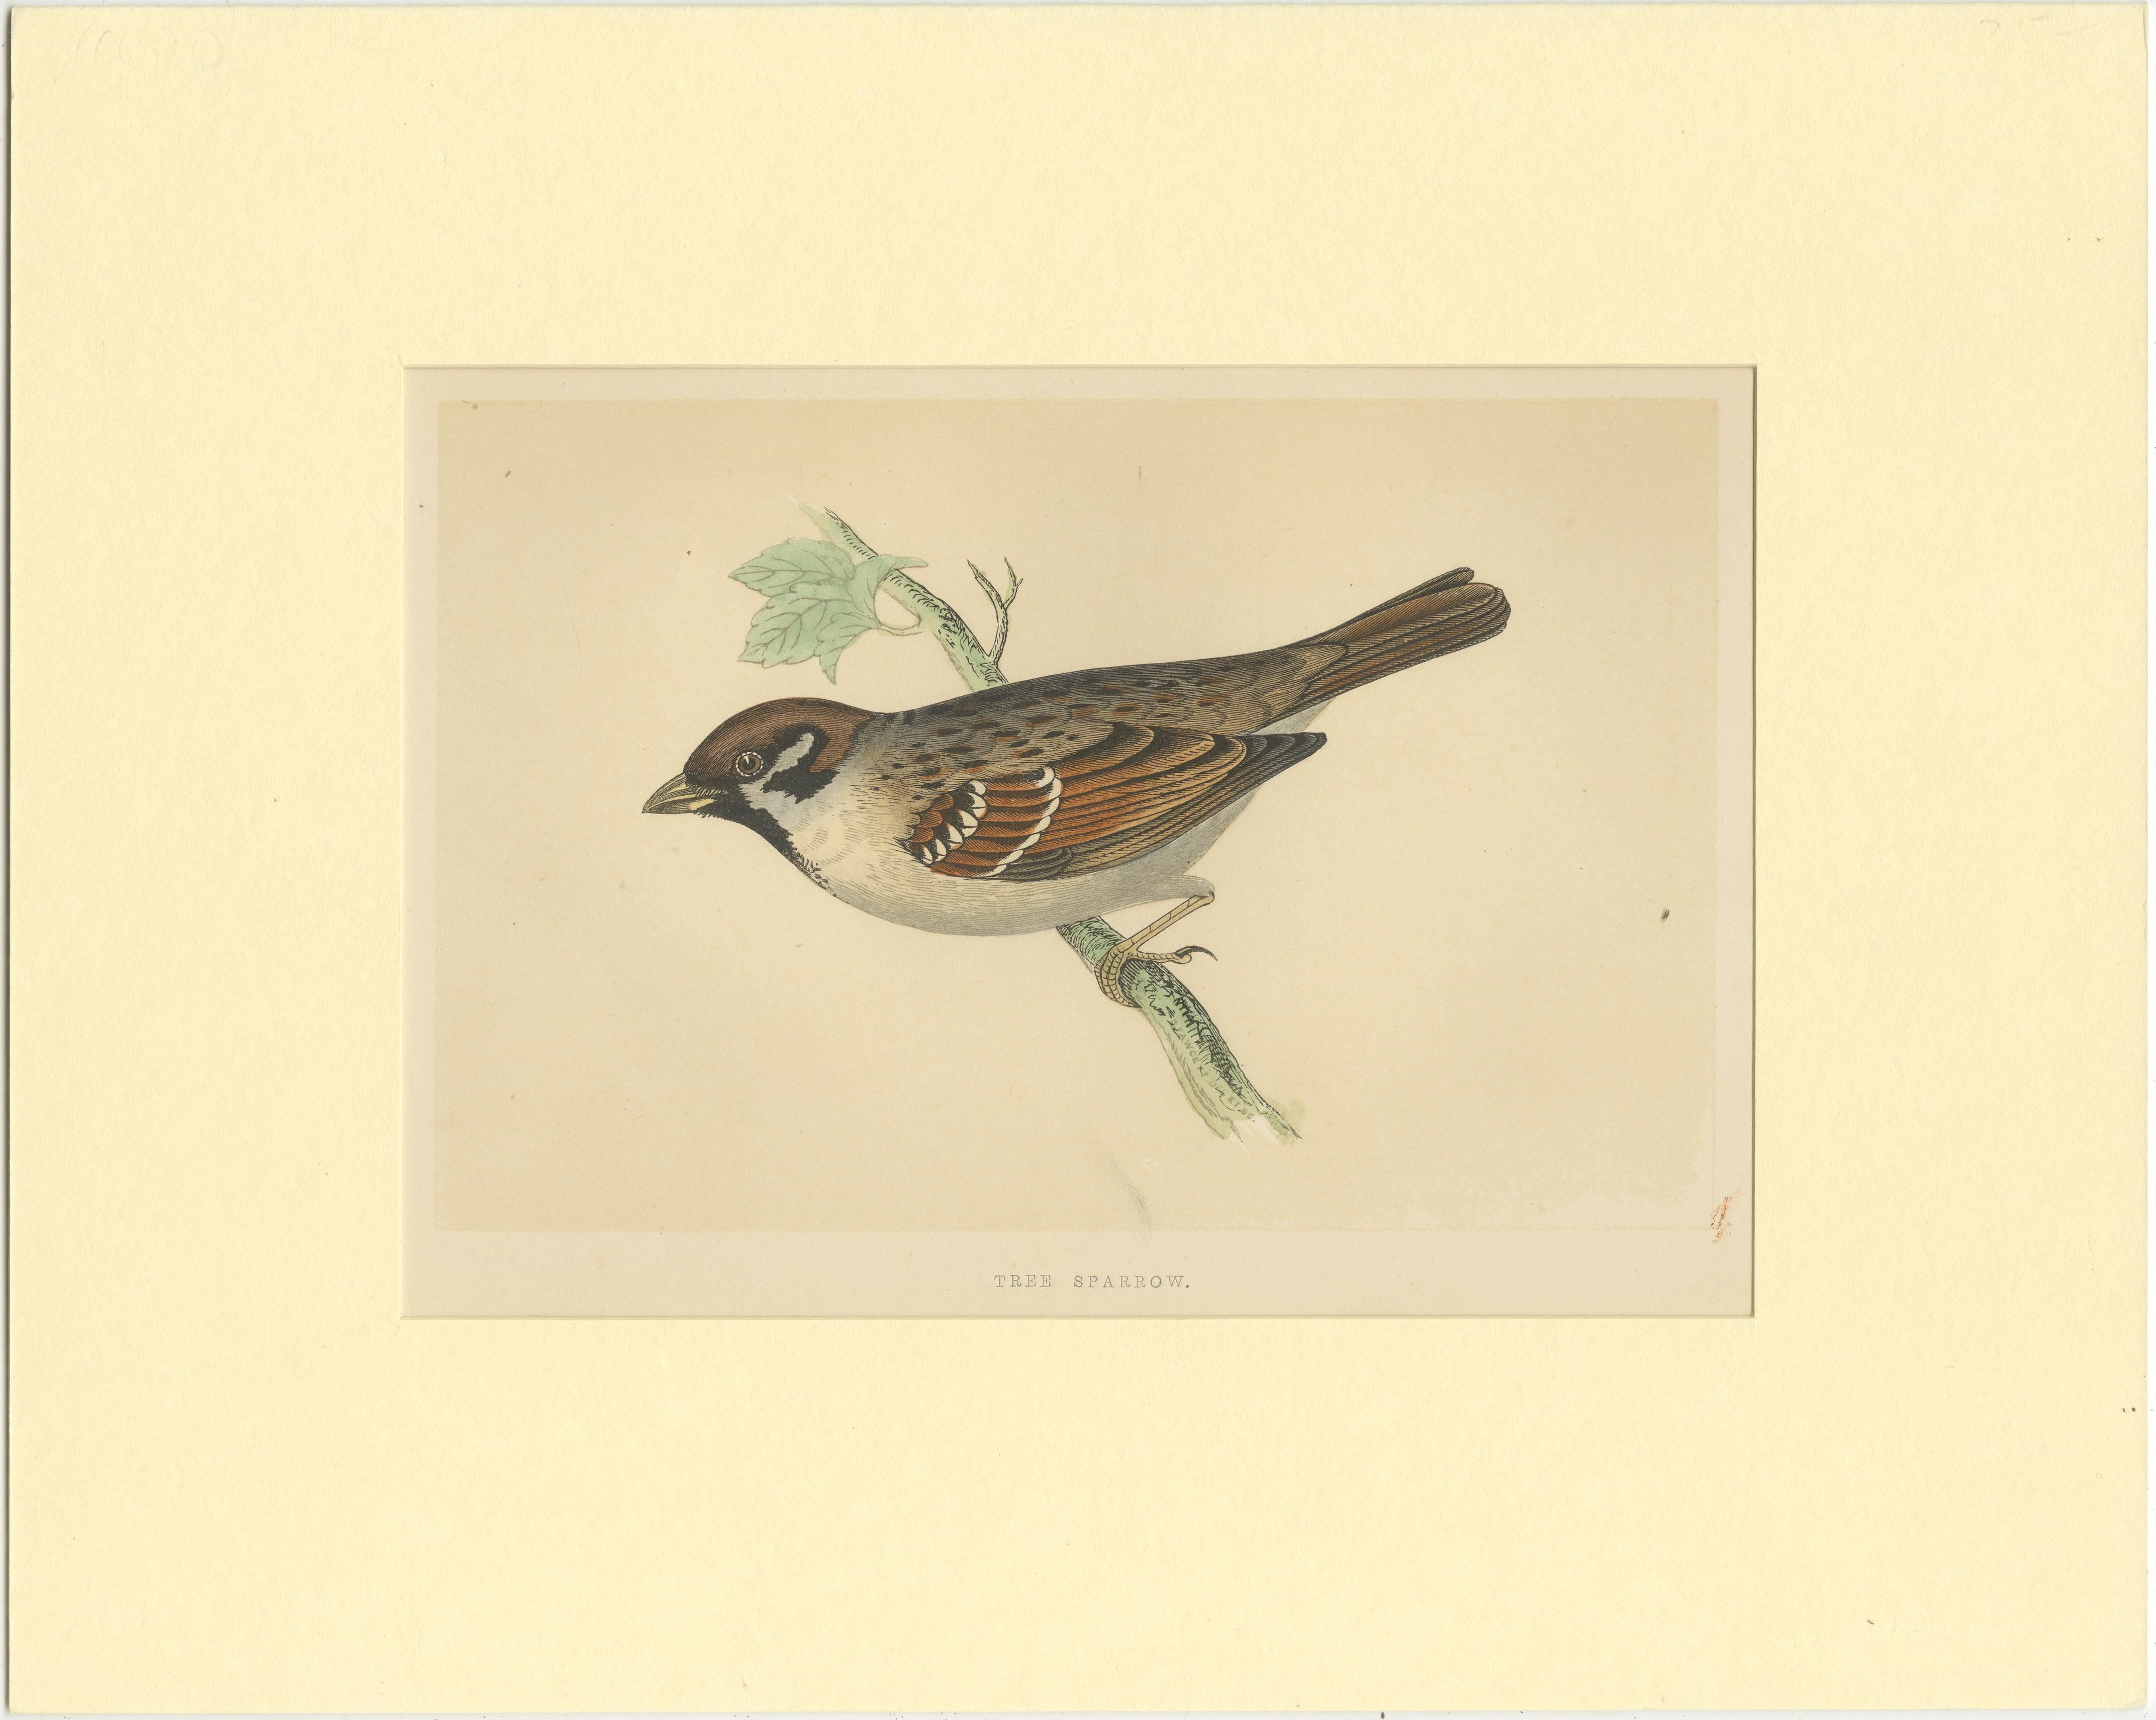 Original antique bird print of a tree sparrow. This print originates from 